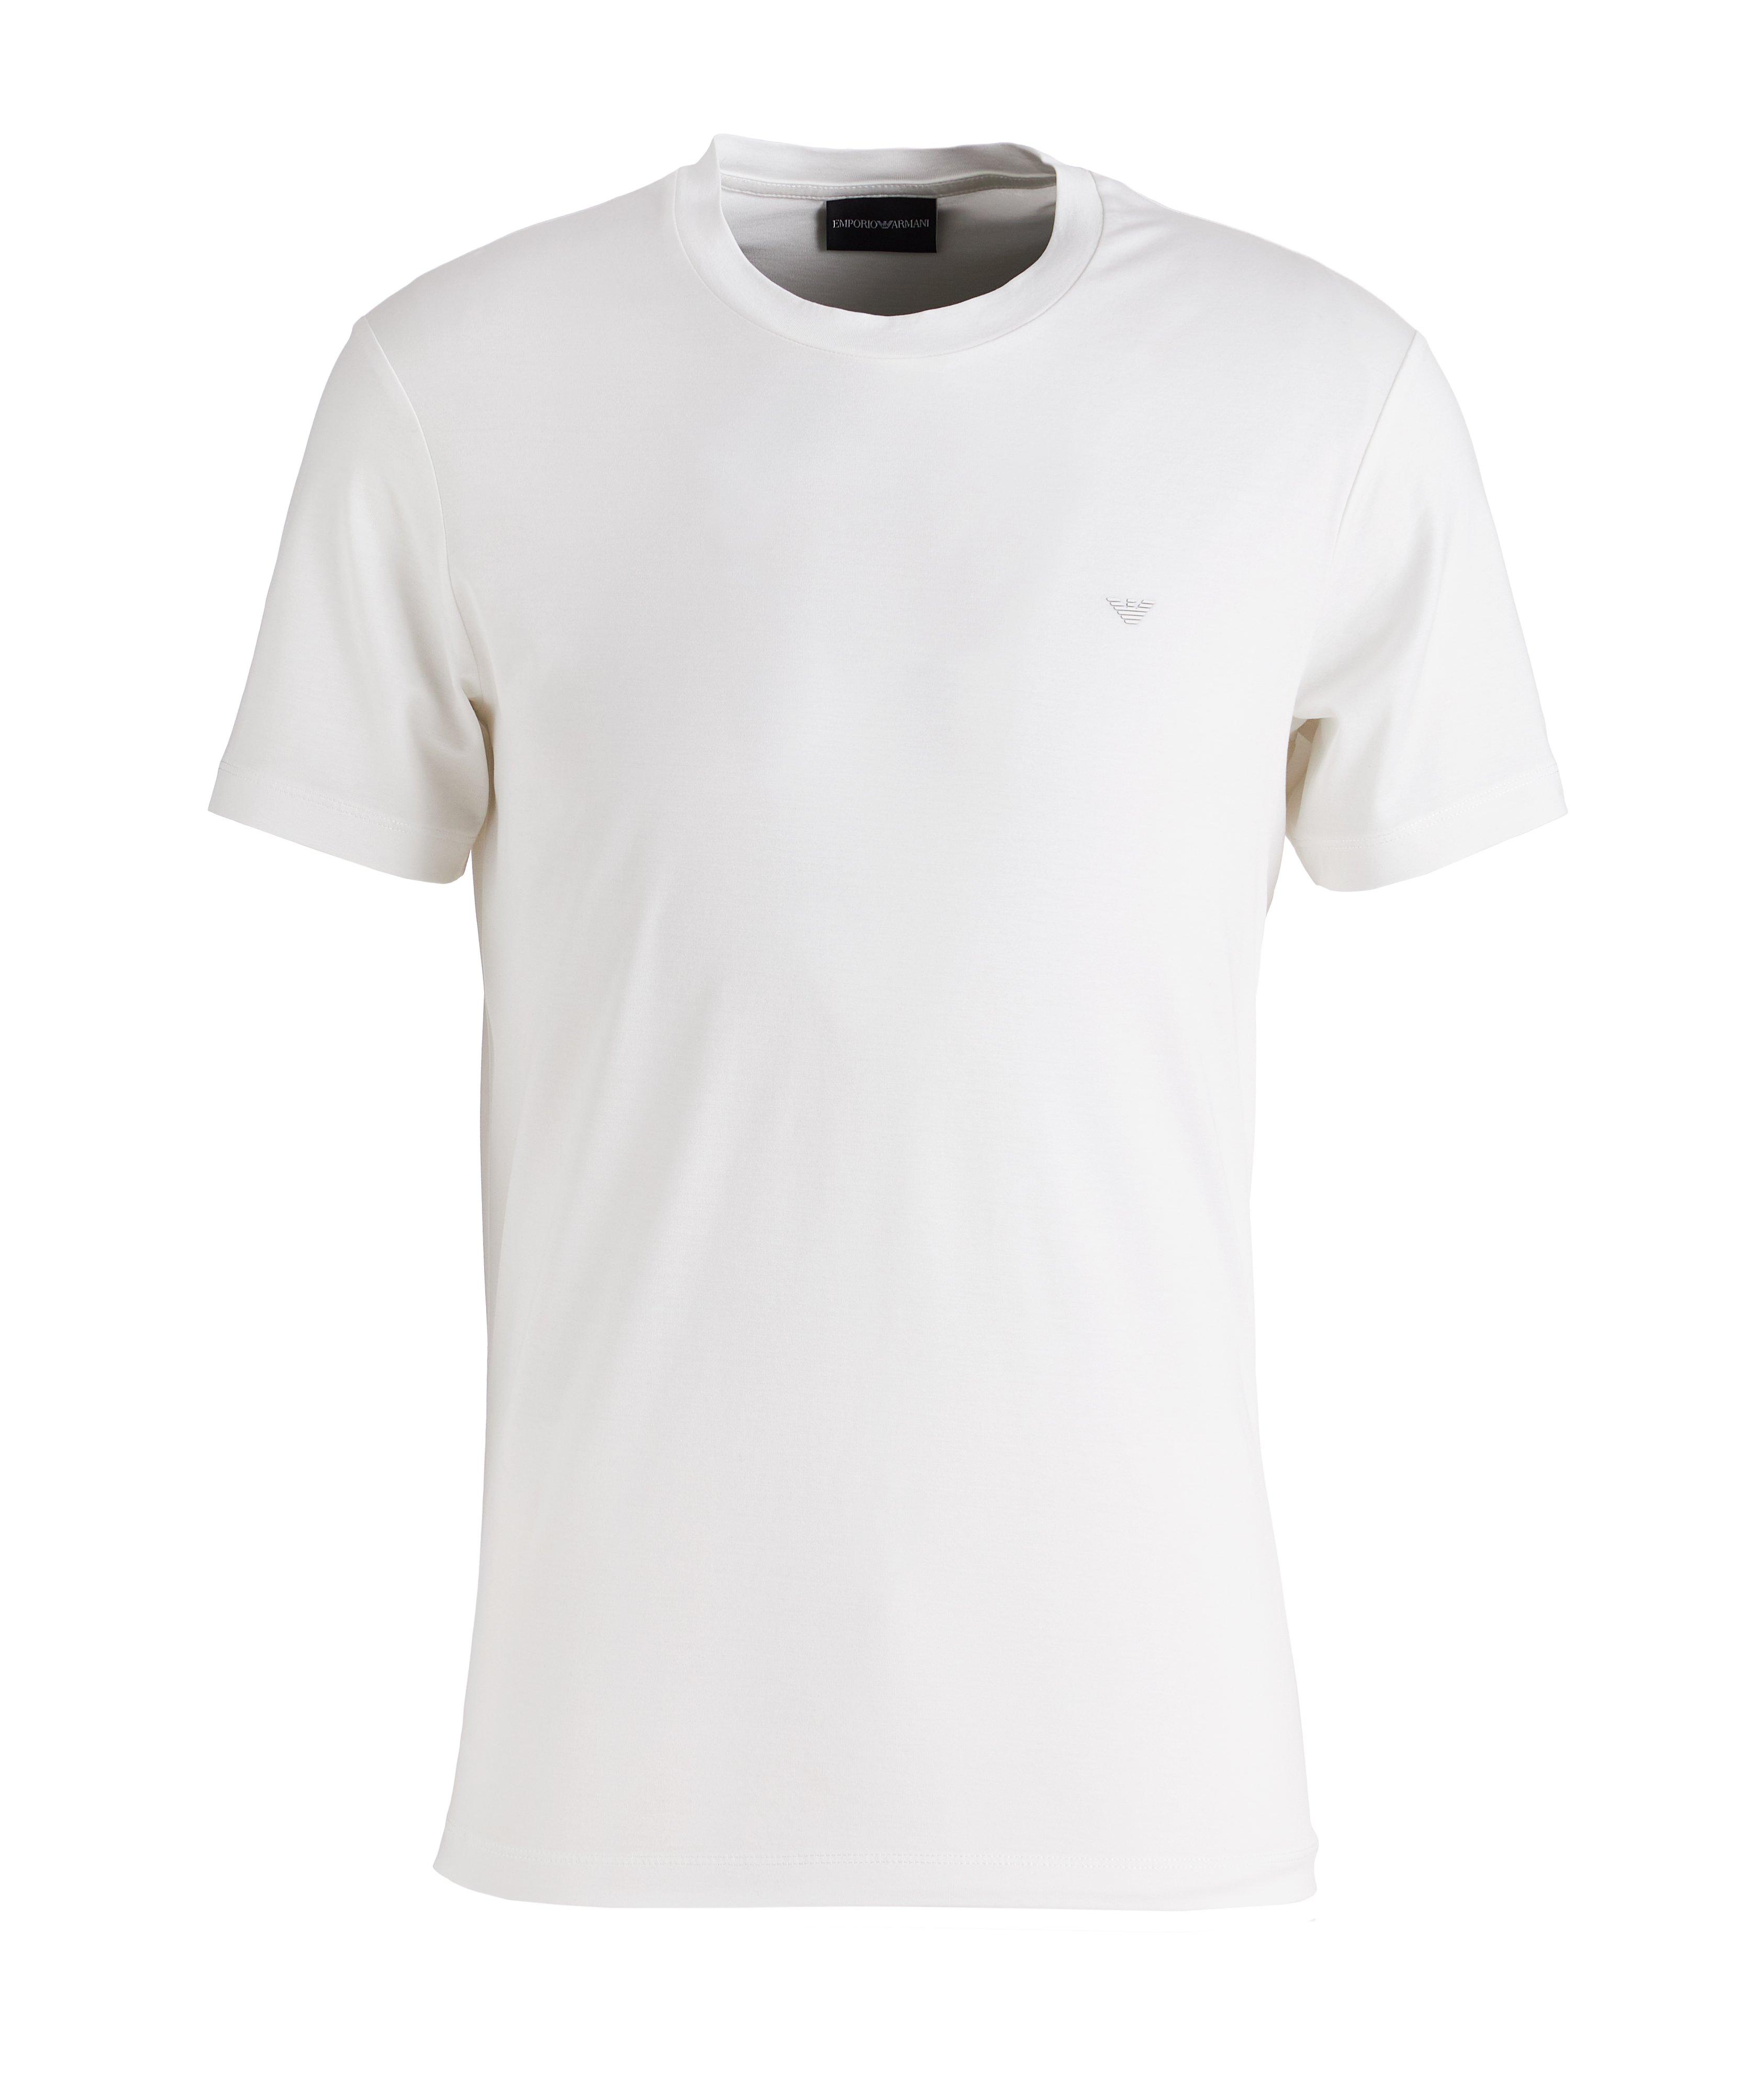 T-shirt en Tencel et coton à encolure ronde image 0